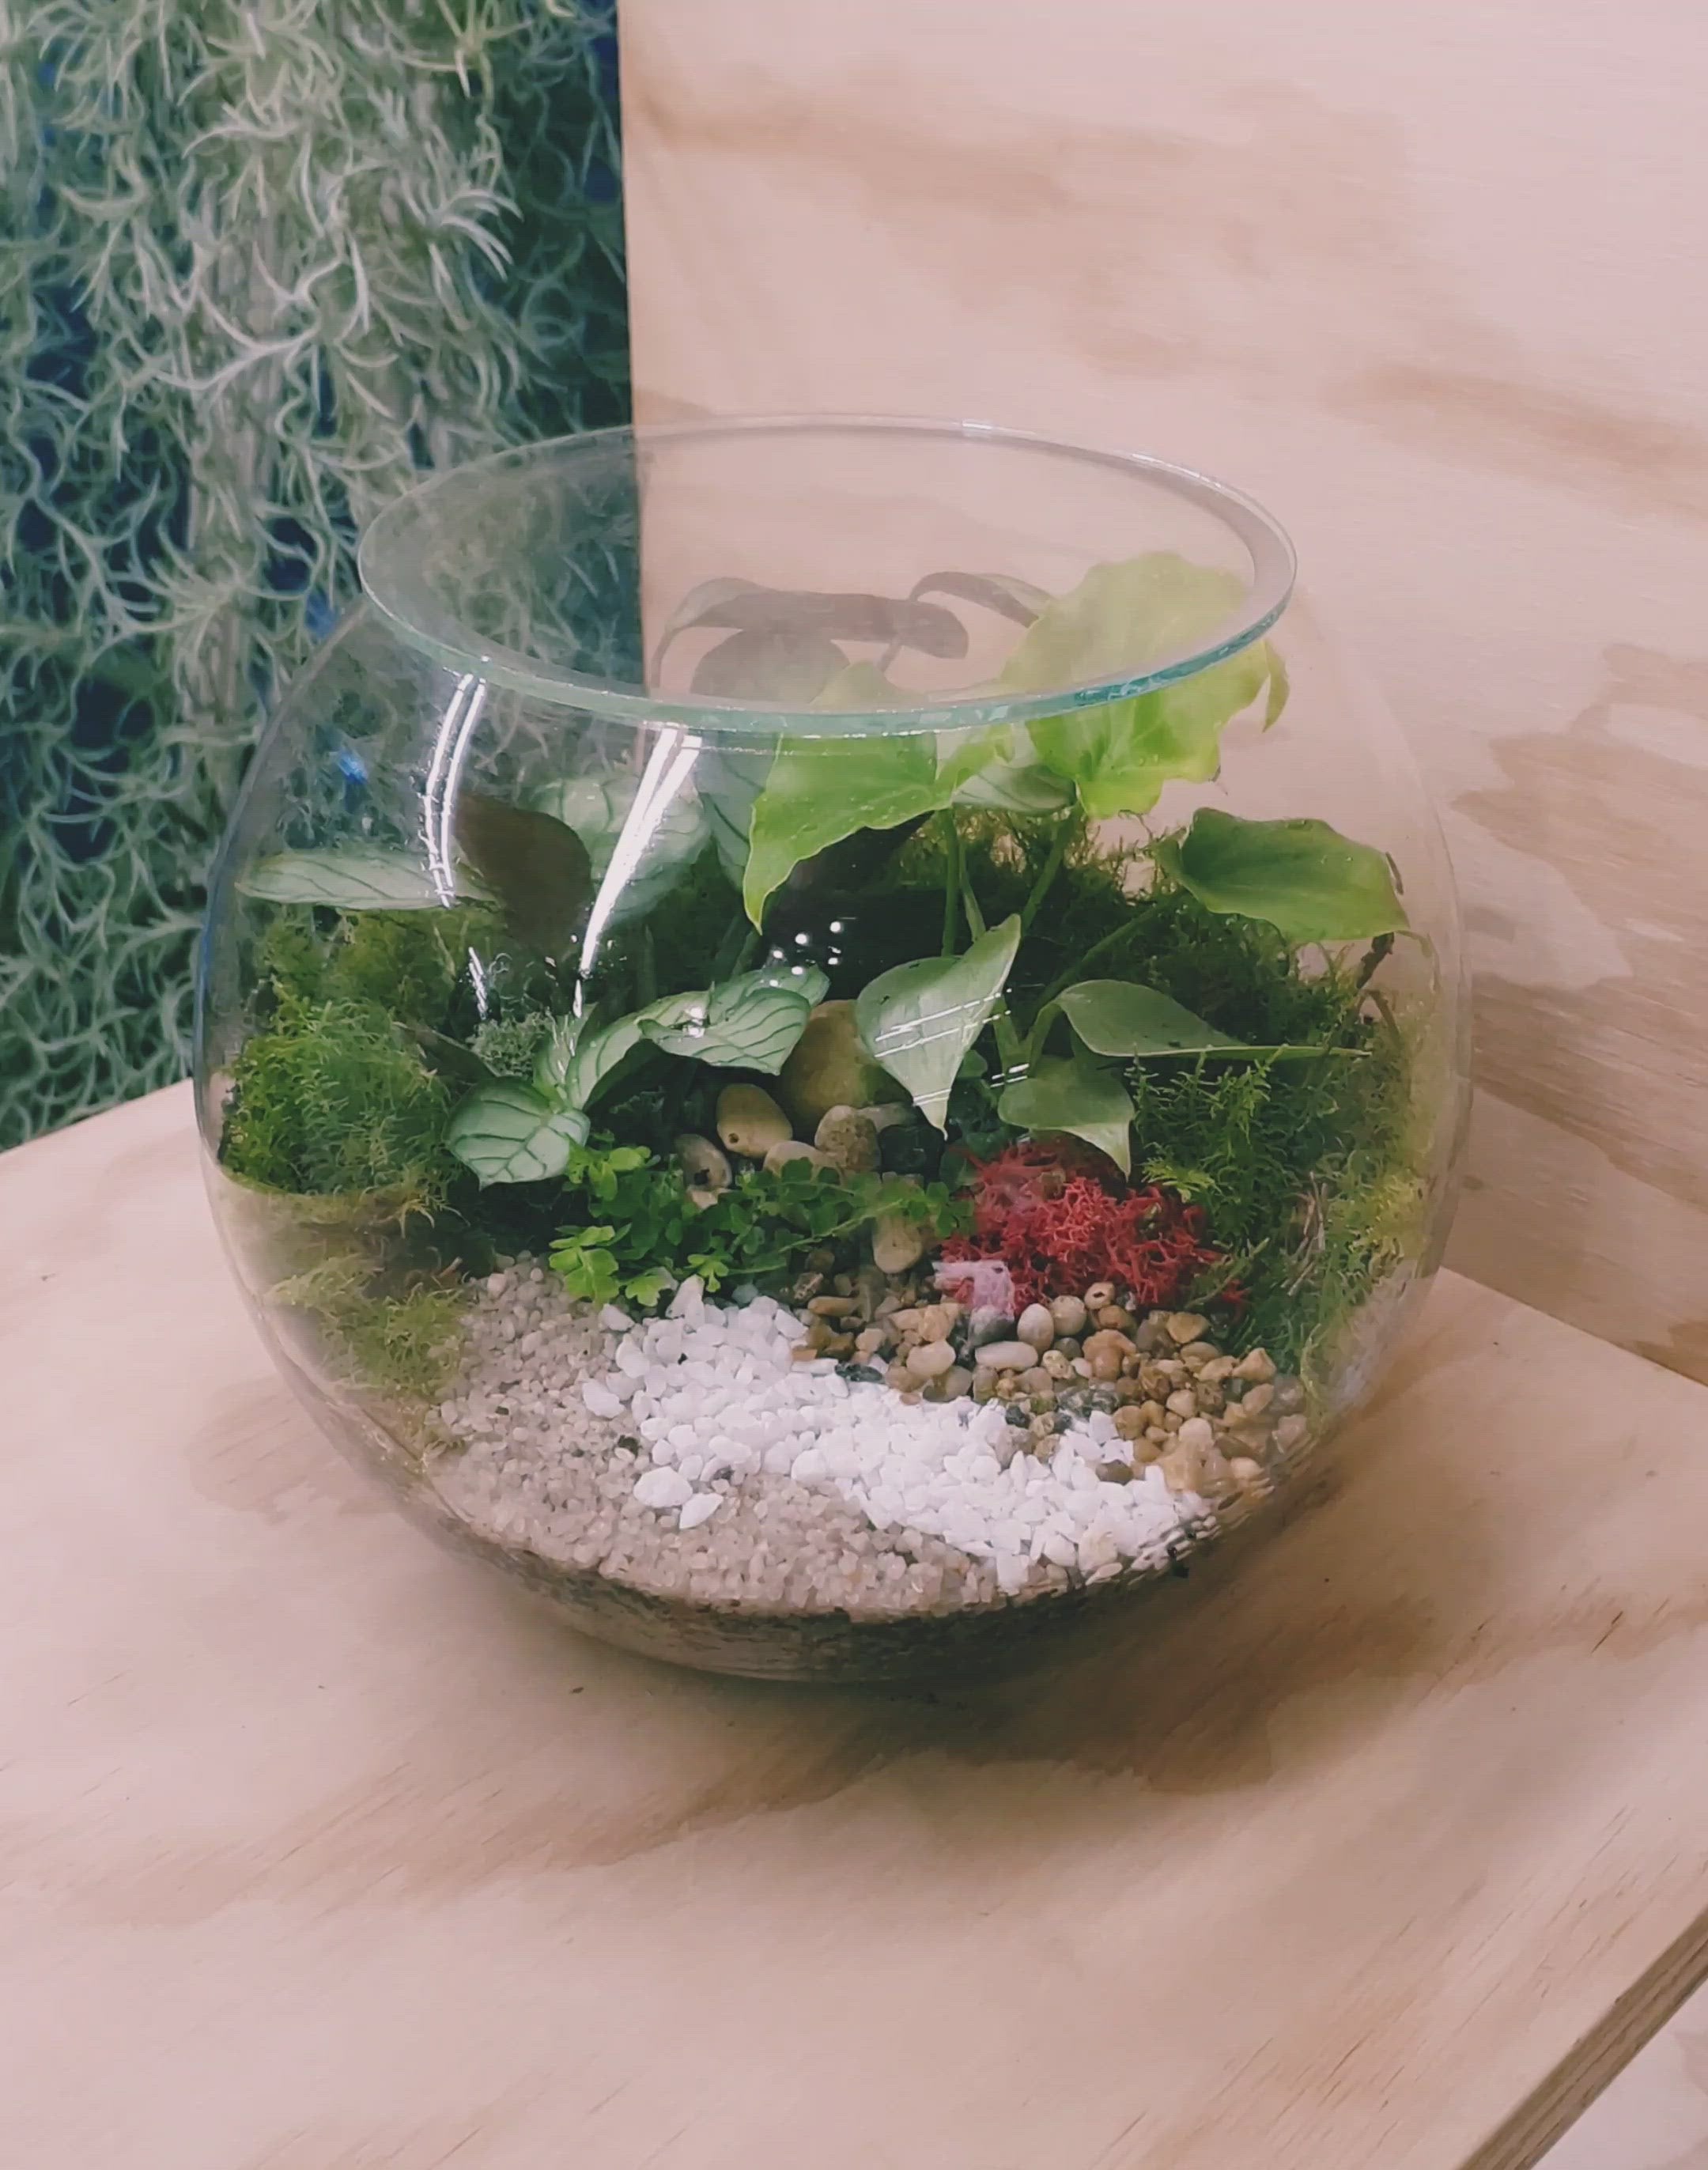 Enclosed fishbowl terrarium Melbourne